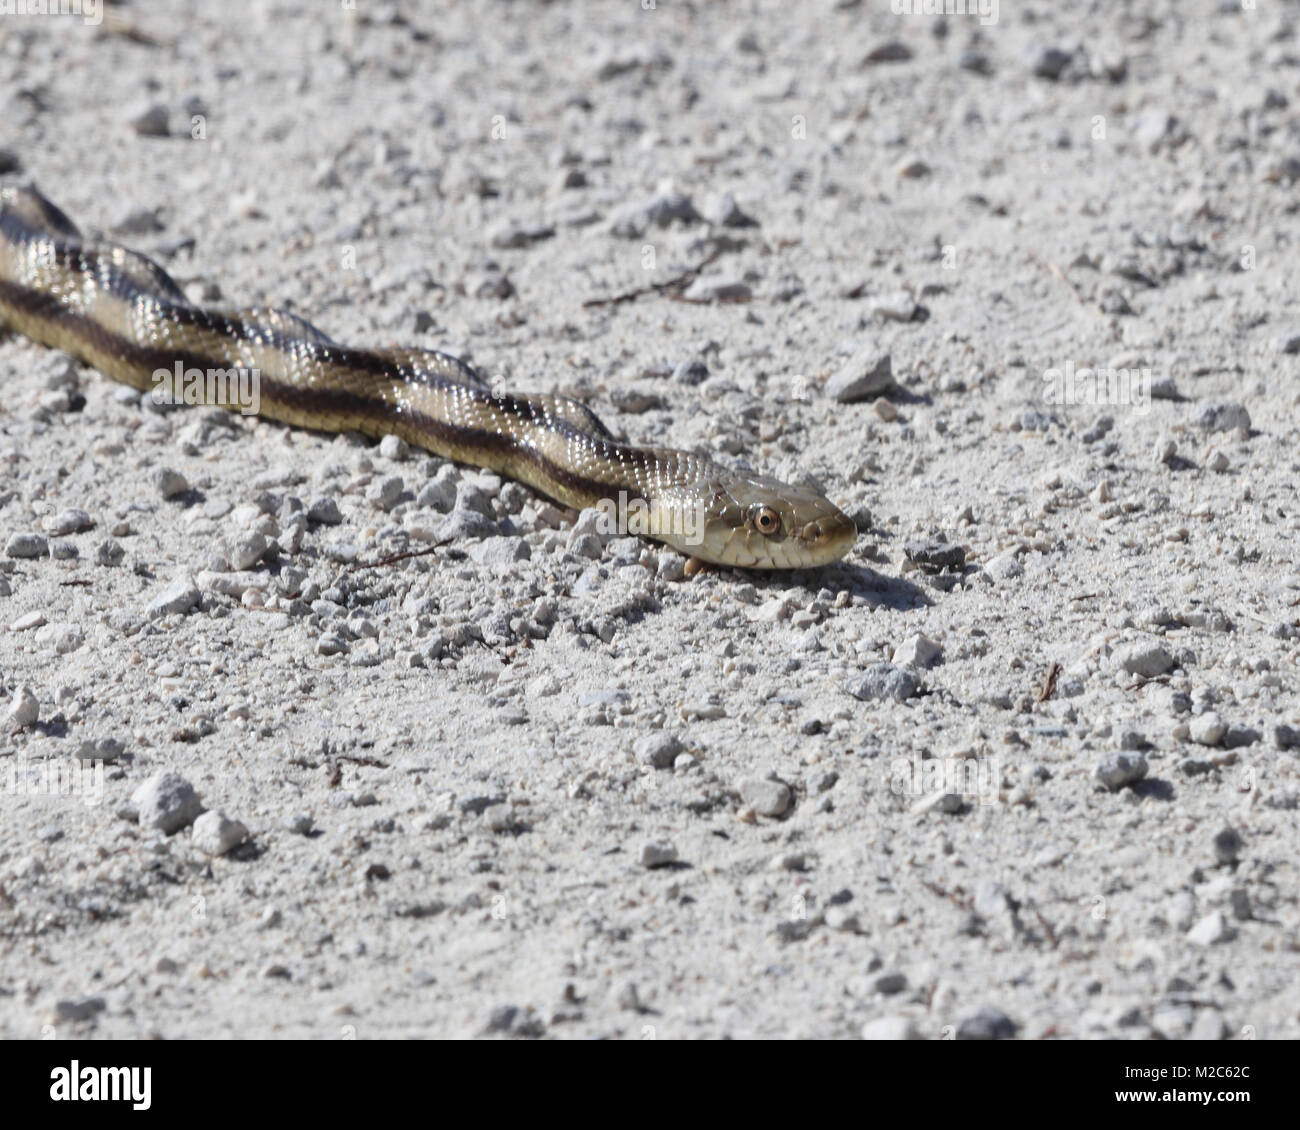 Closeup of Florida rat snake Stock Photo